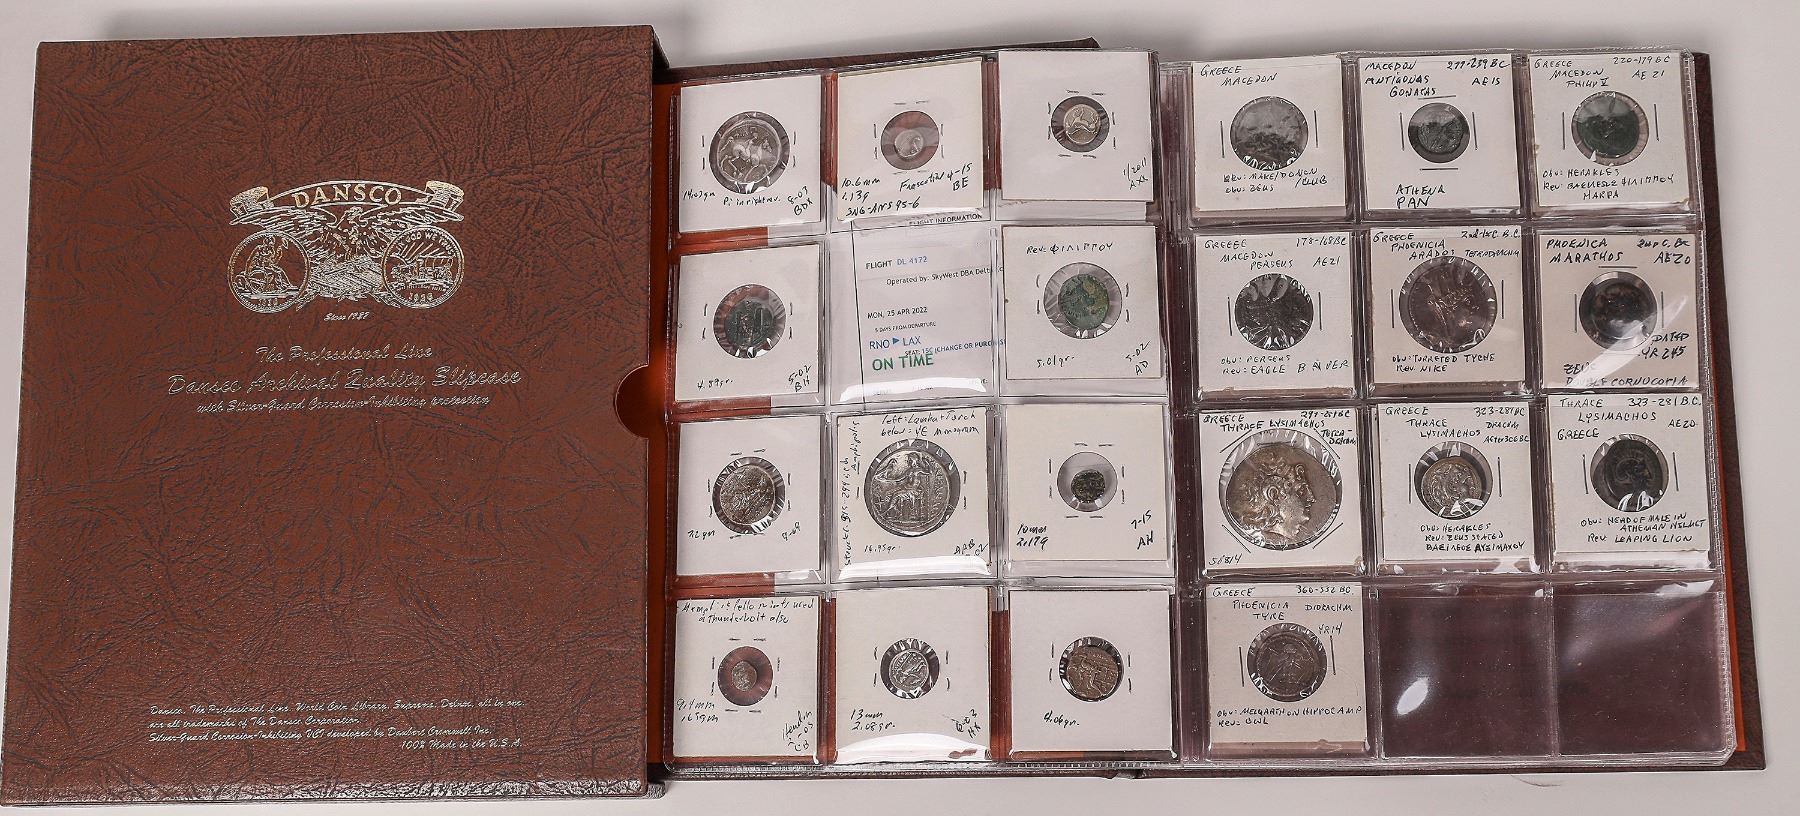  Greek coin album, est. $4,000-$6,000